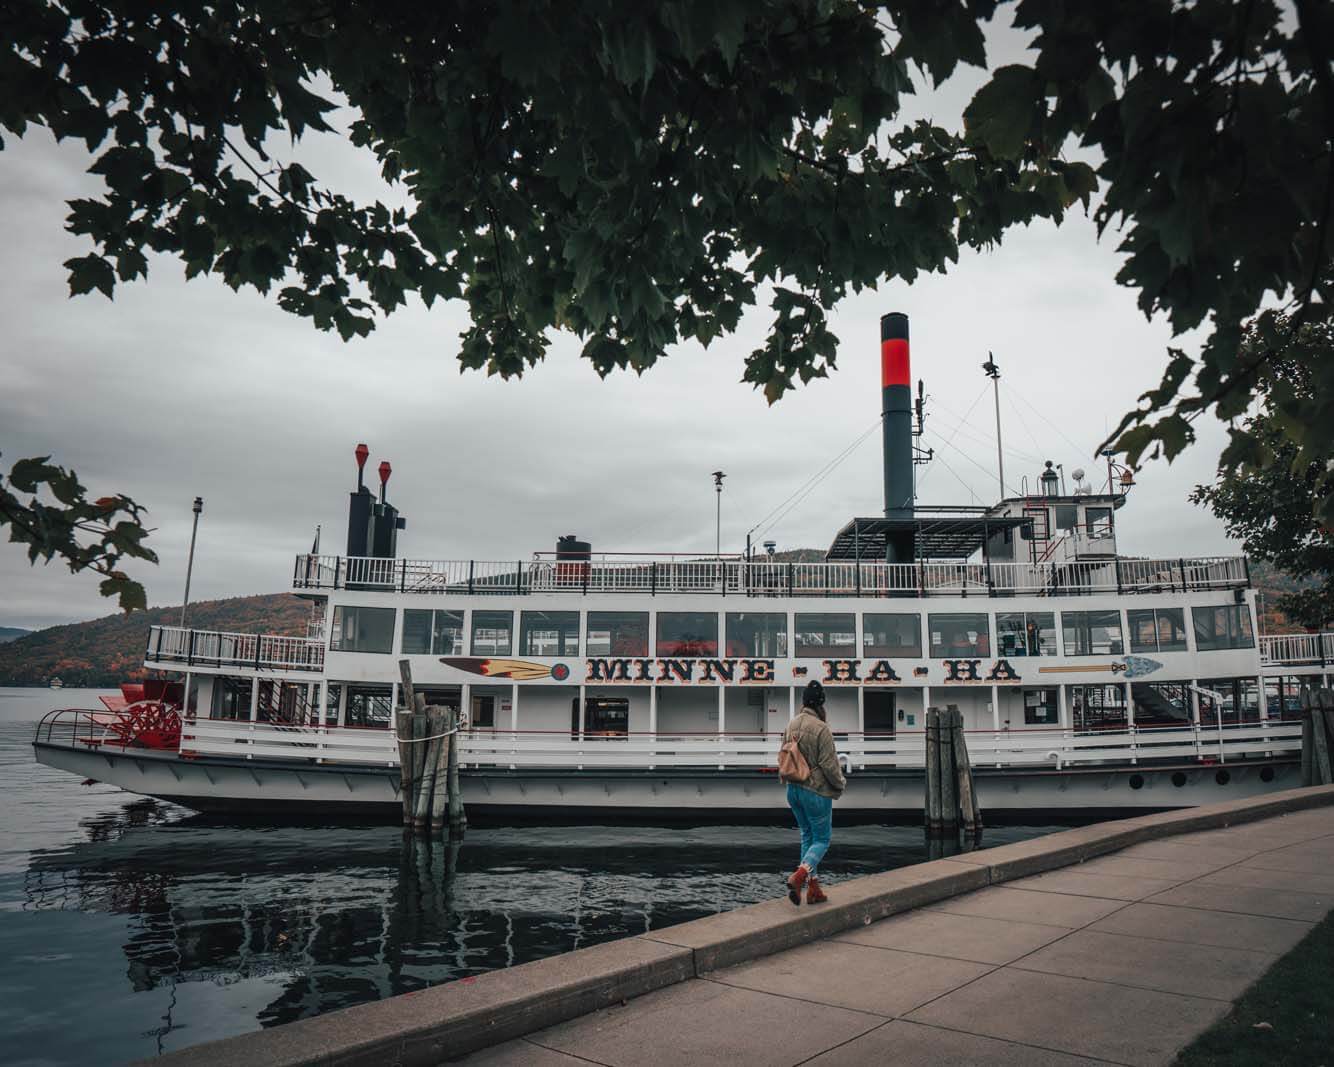 Minnie Ha Ha Steamboat at Lake George in New York